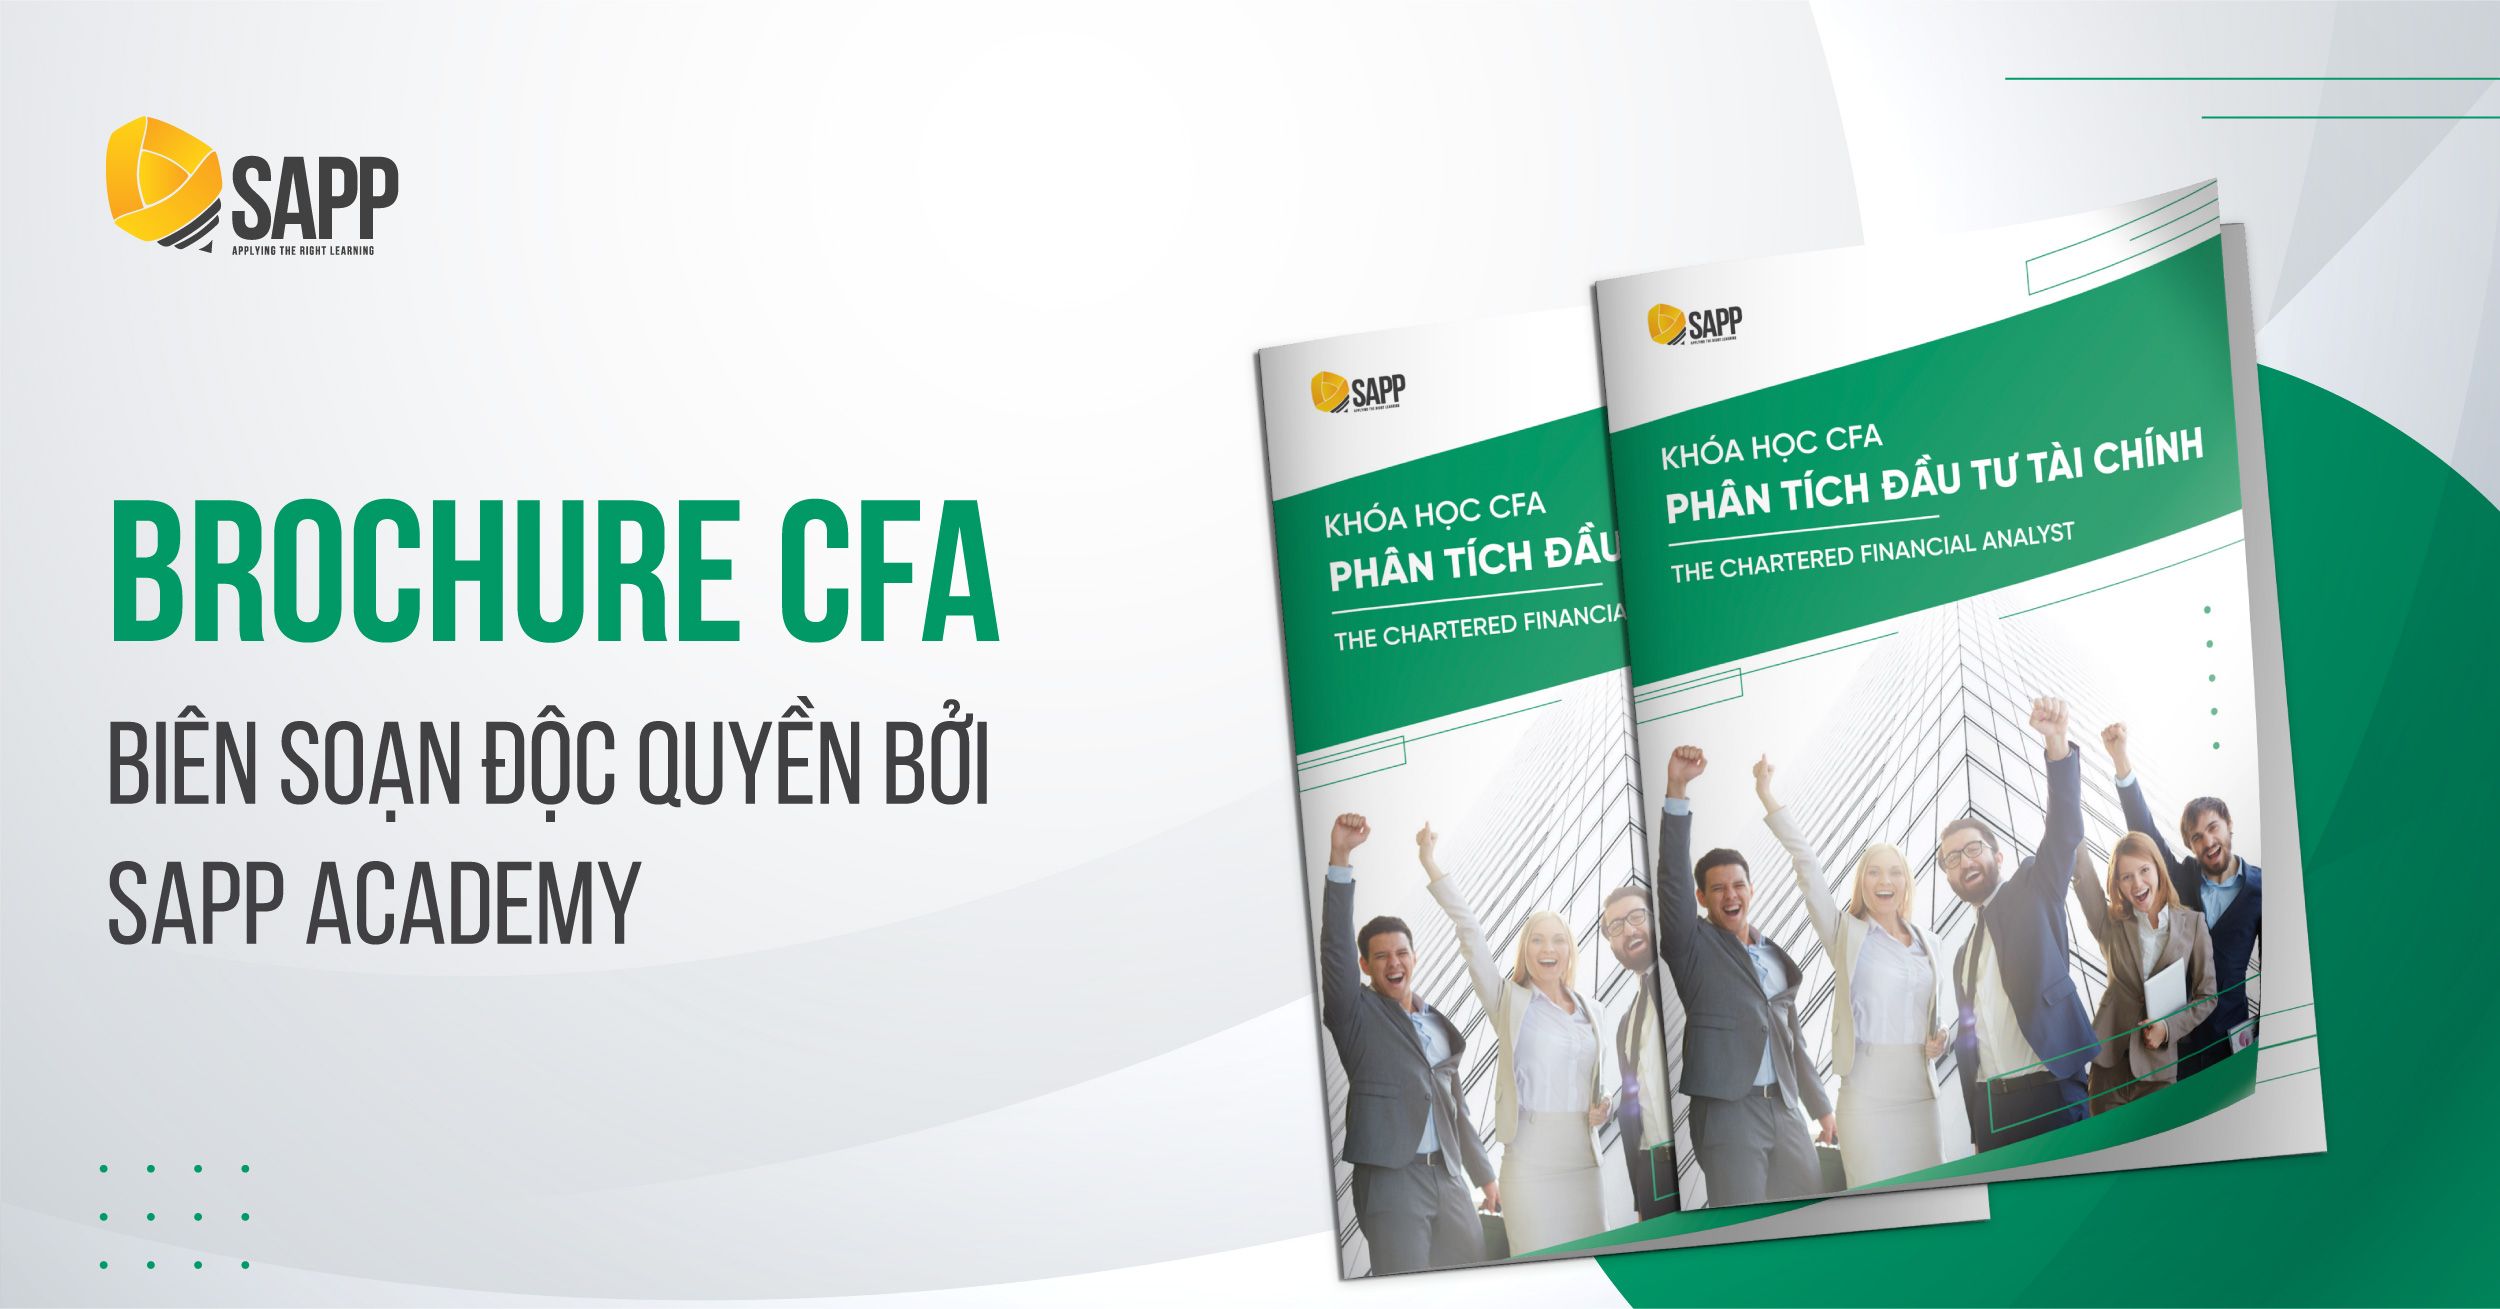 CFA Blog Tổng hợp tài liệu học CFA cho người mới bắt đầu_1200x628 copy 4